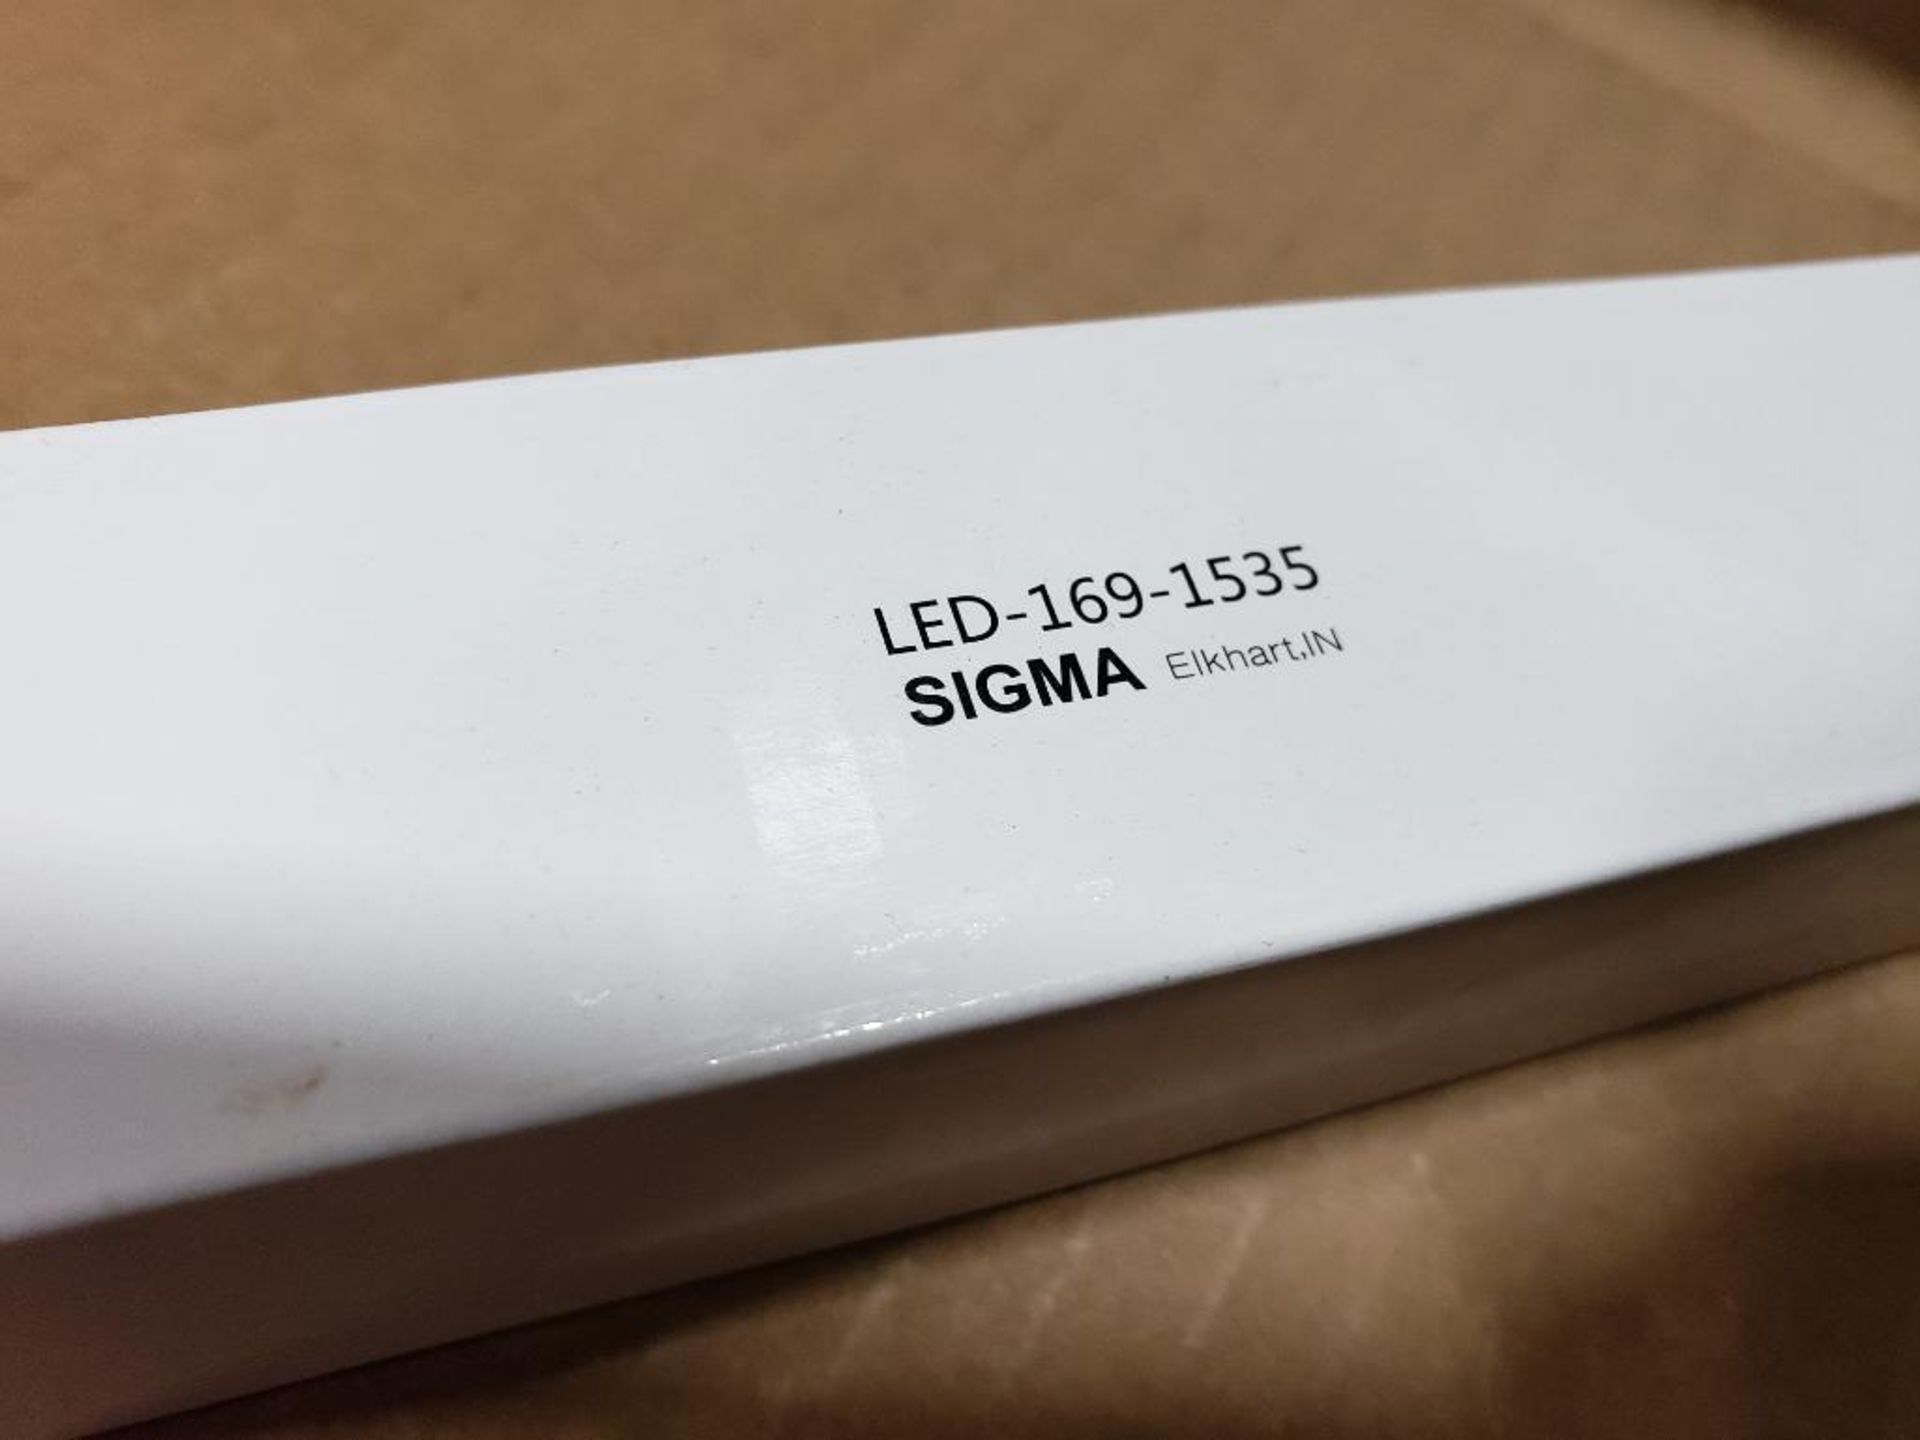 Qty 25 - Sigma LED lights. Part number LED-169-1535. - Image 4 of 4